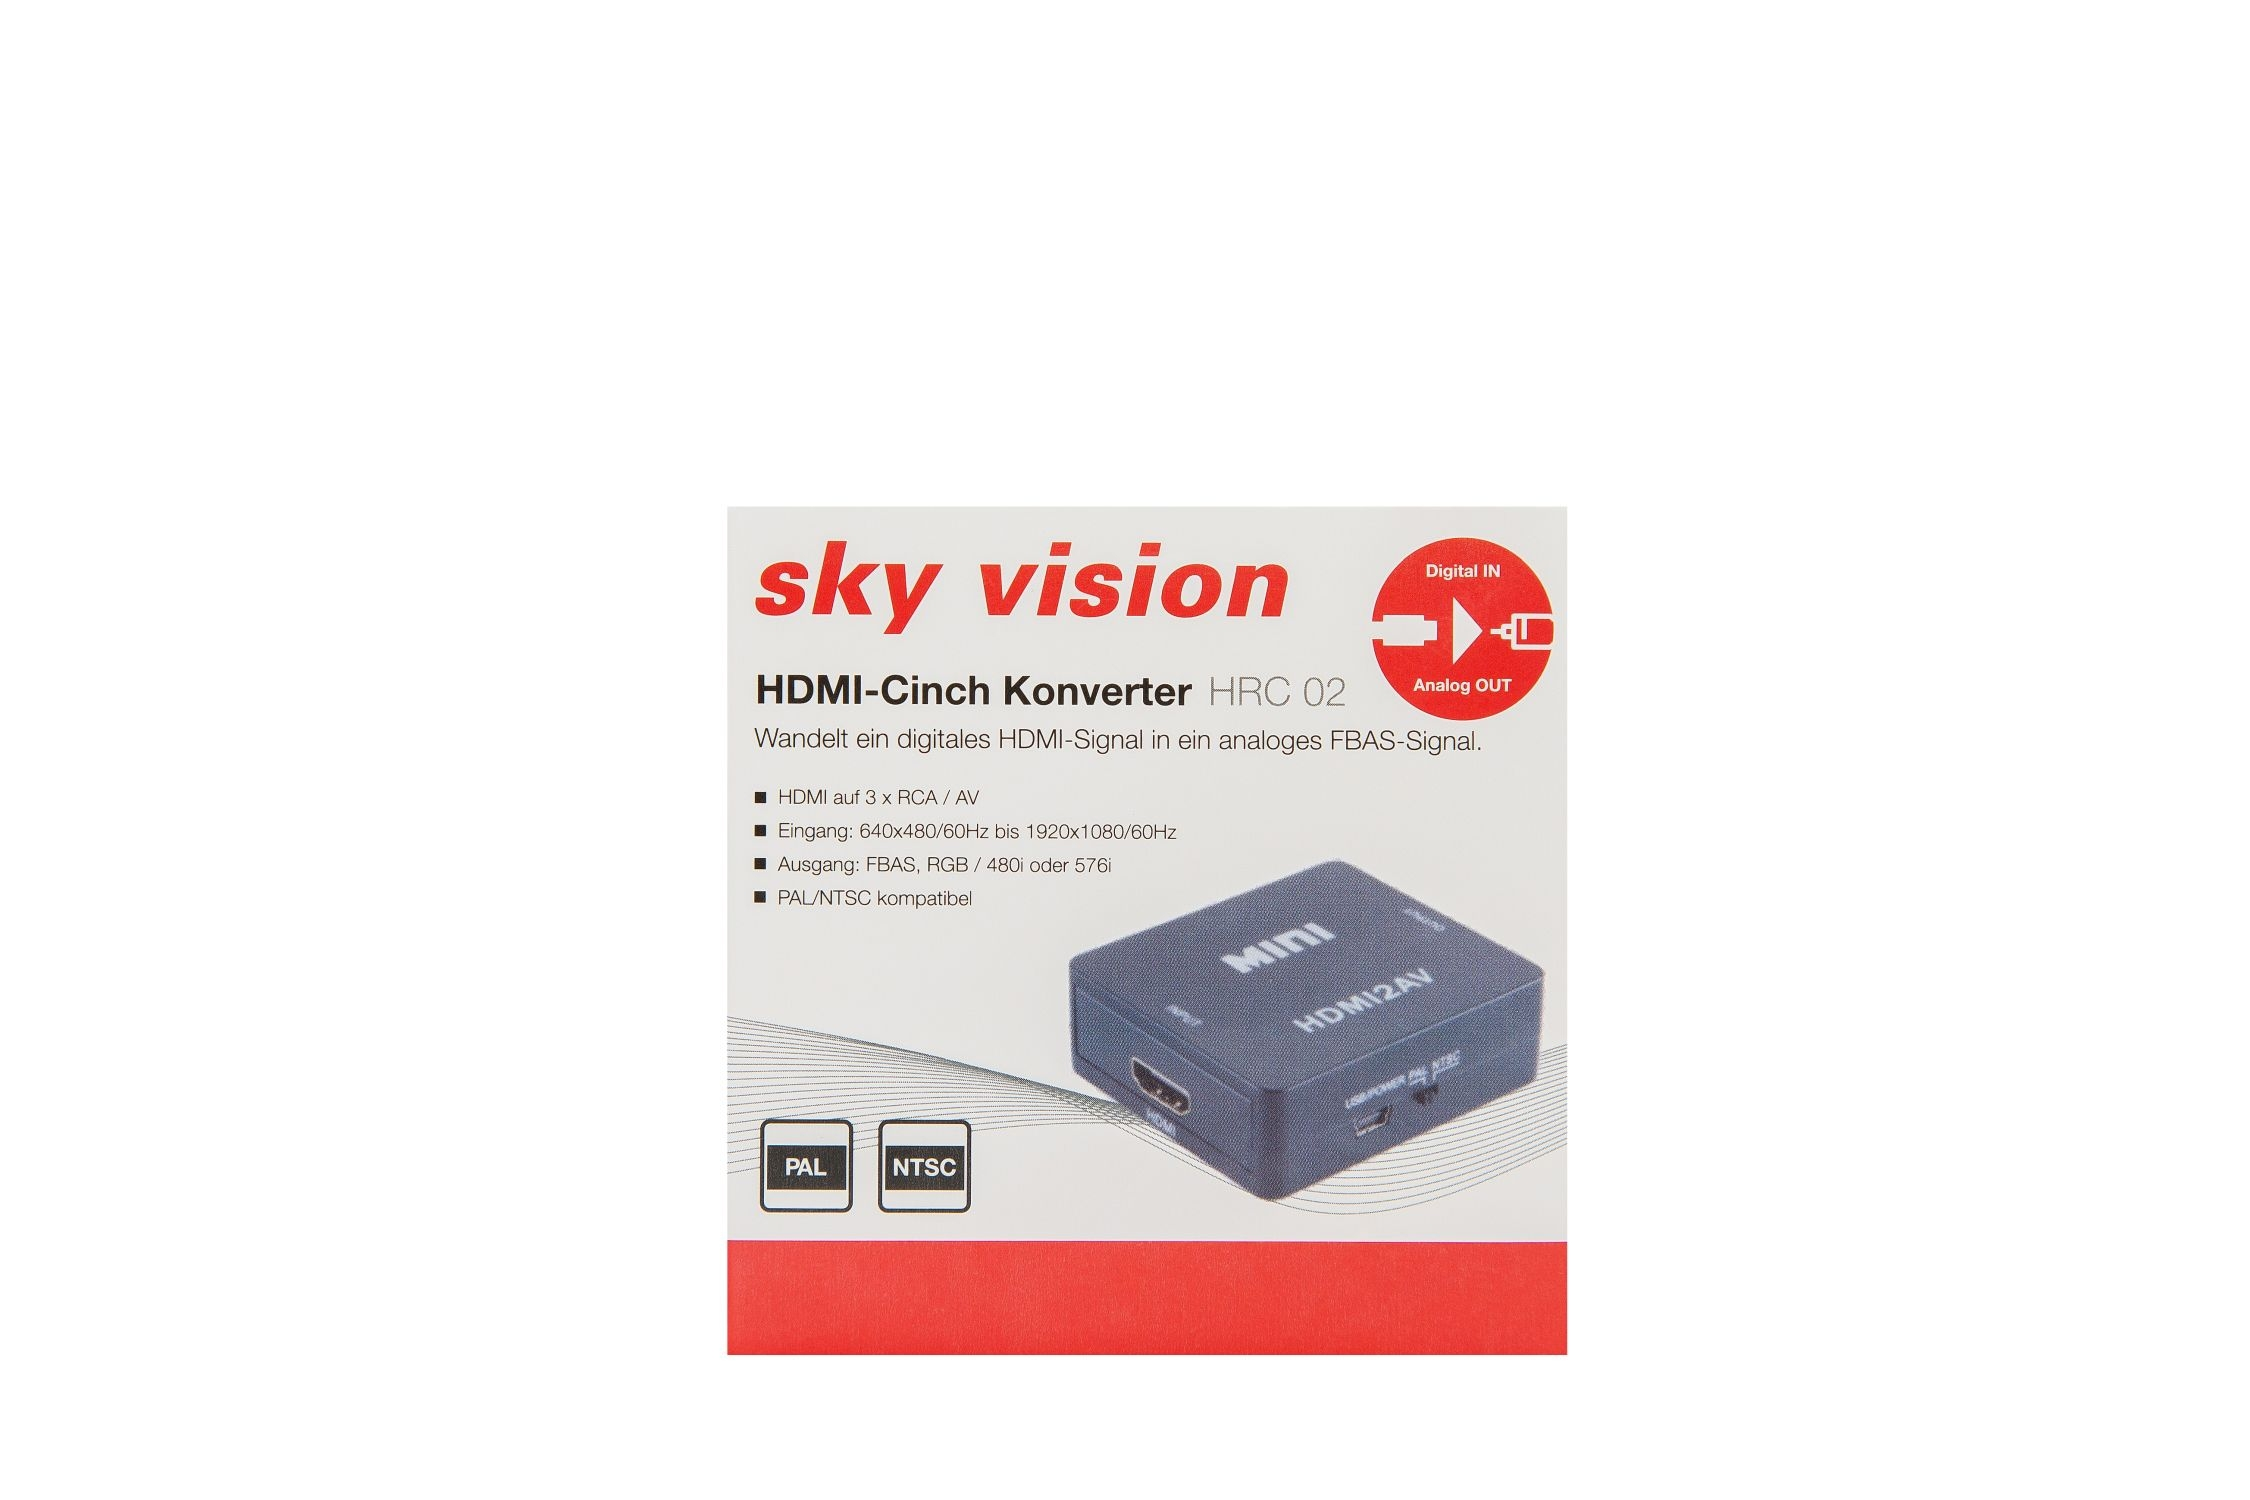 V1116 SKY HDMI zu FBAS-Konverter VISION